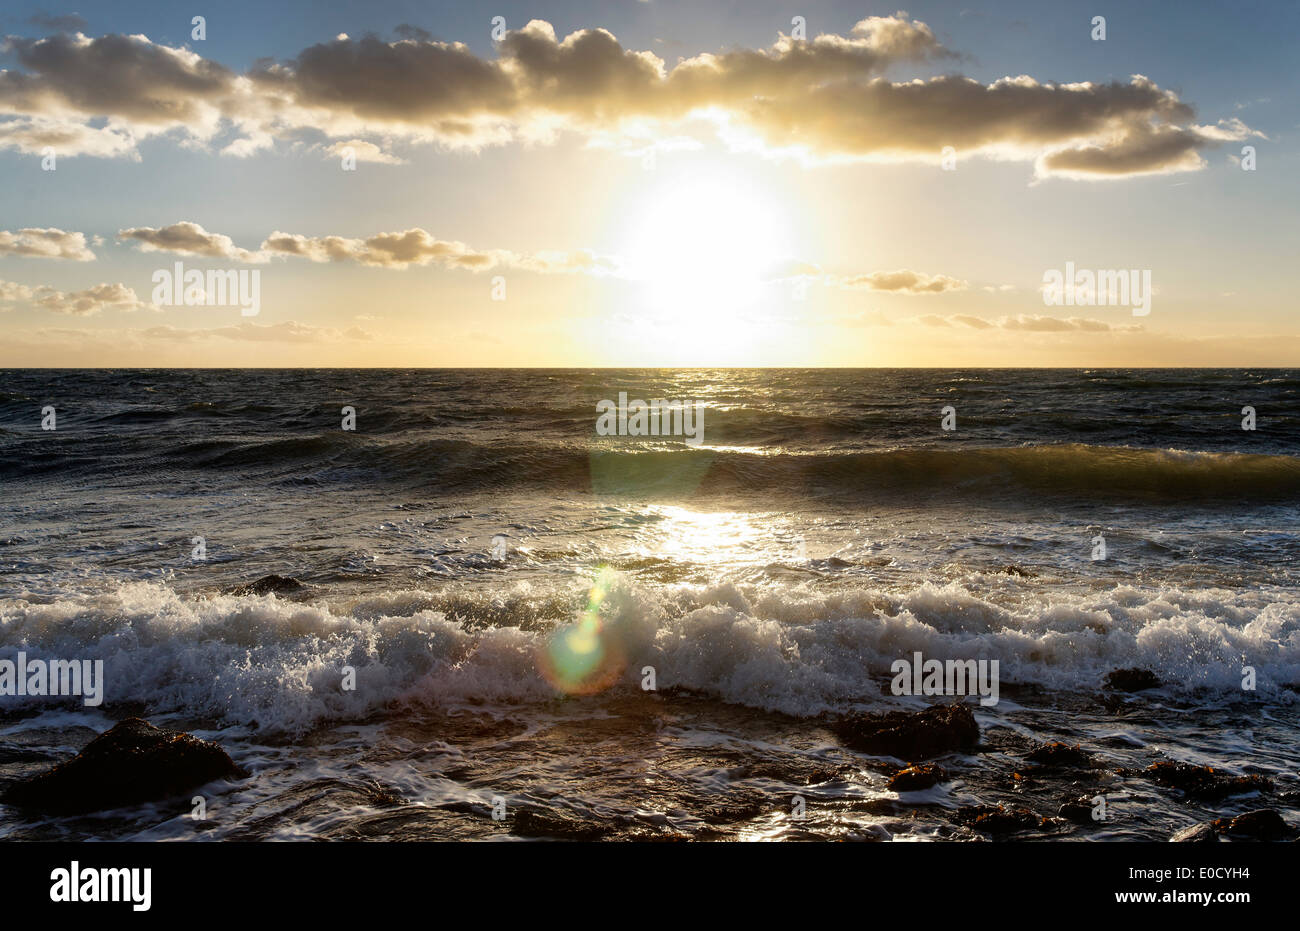 Les nuages et le soleil au-dessus de la mer Baltique, Bagenkop, île de Croatie, Danemark, Europe Banque D'Images